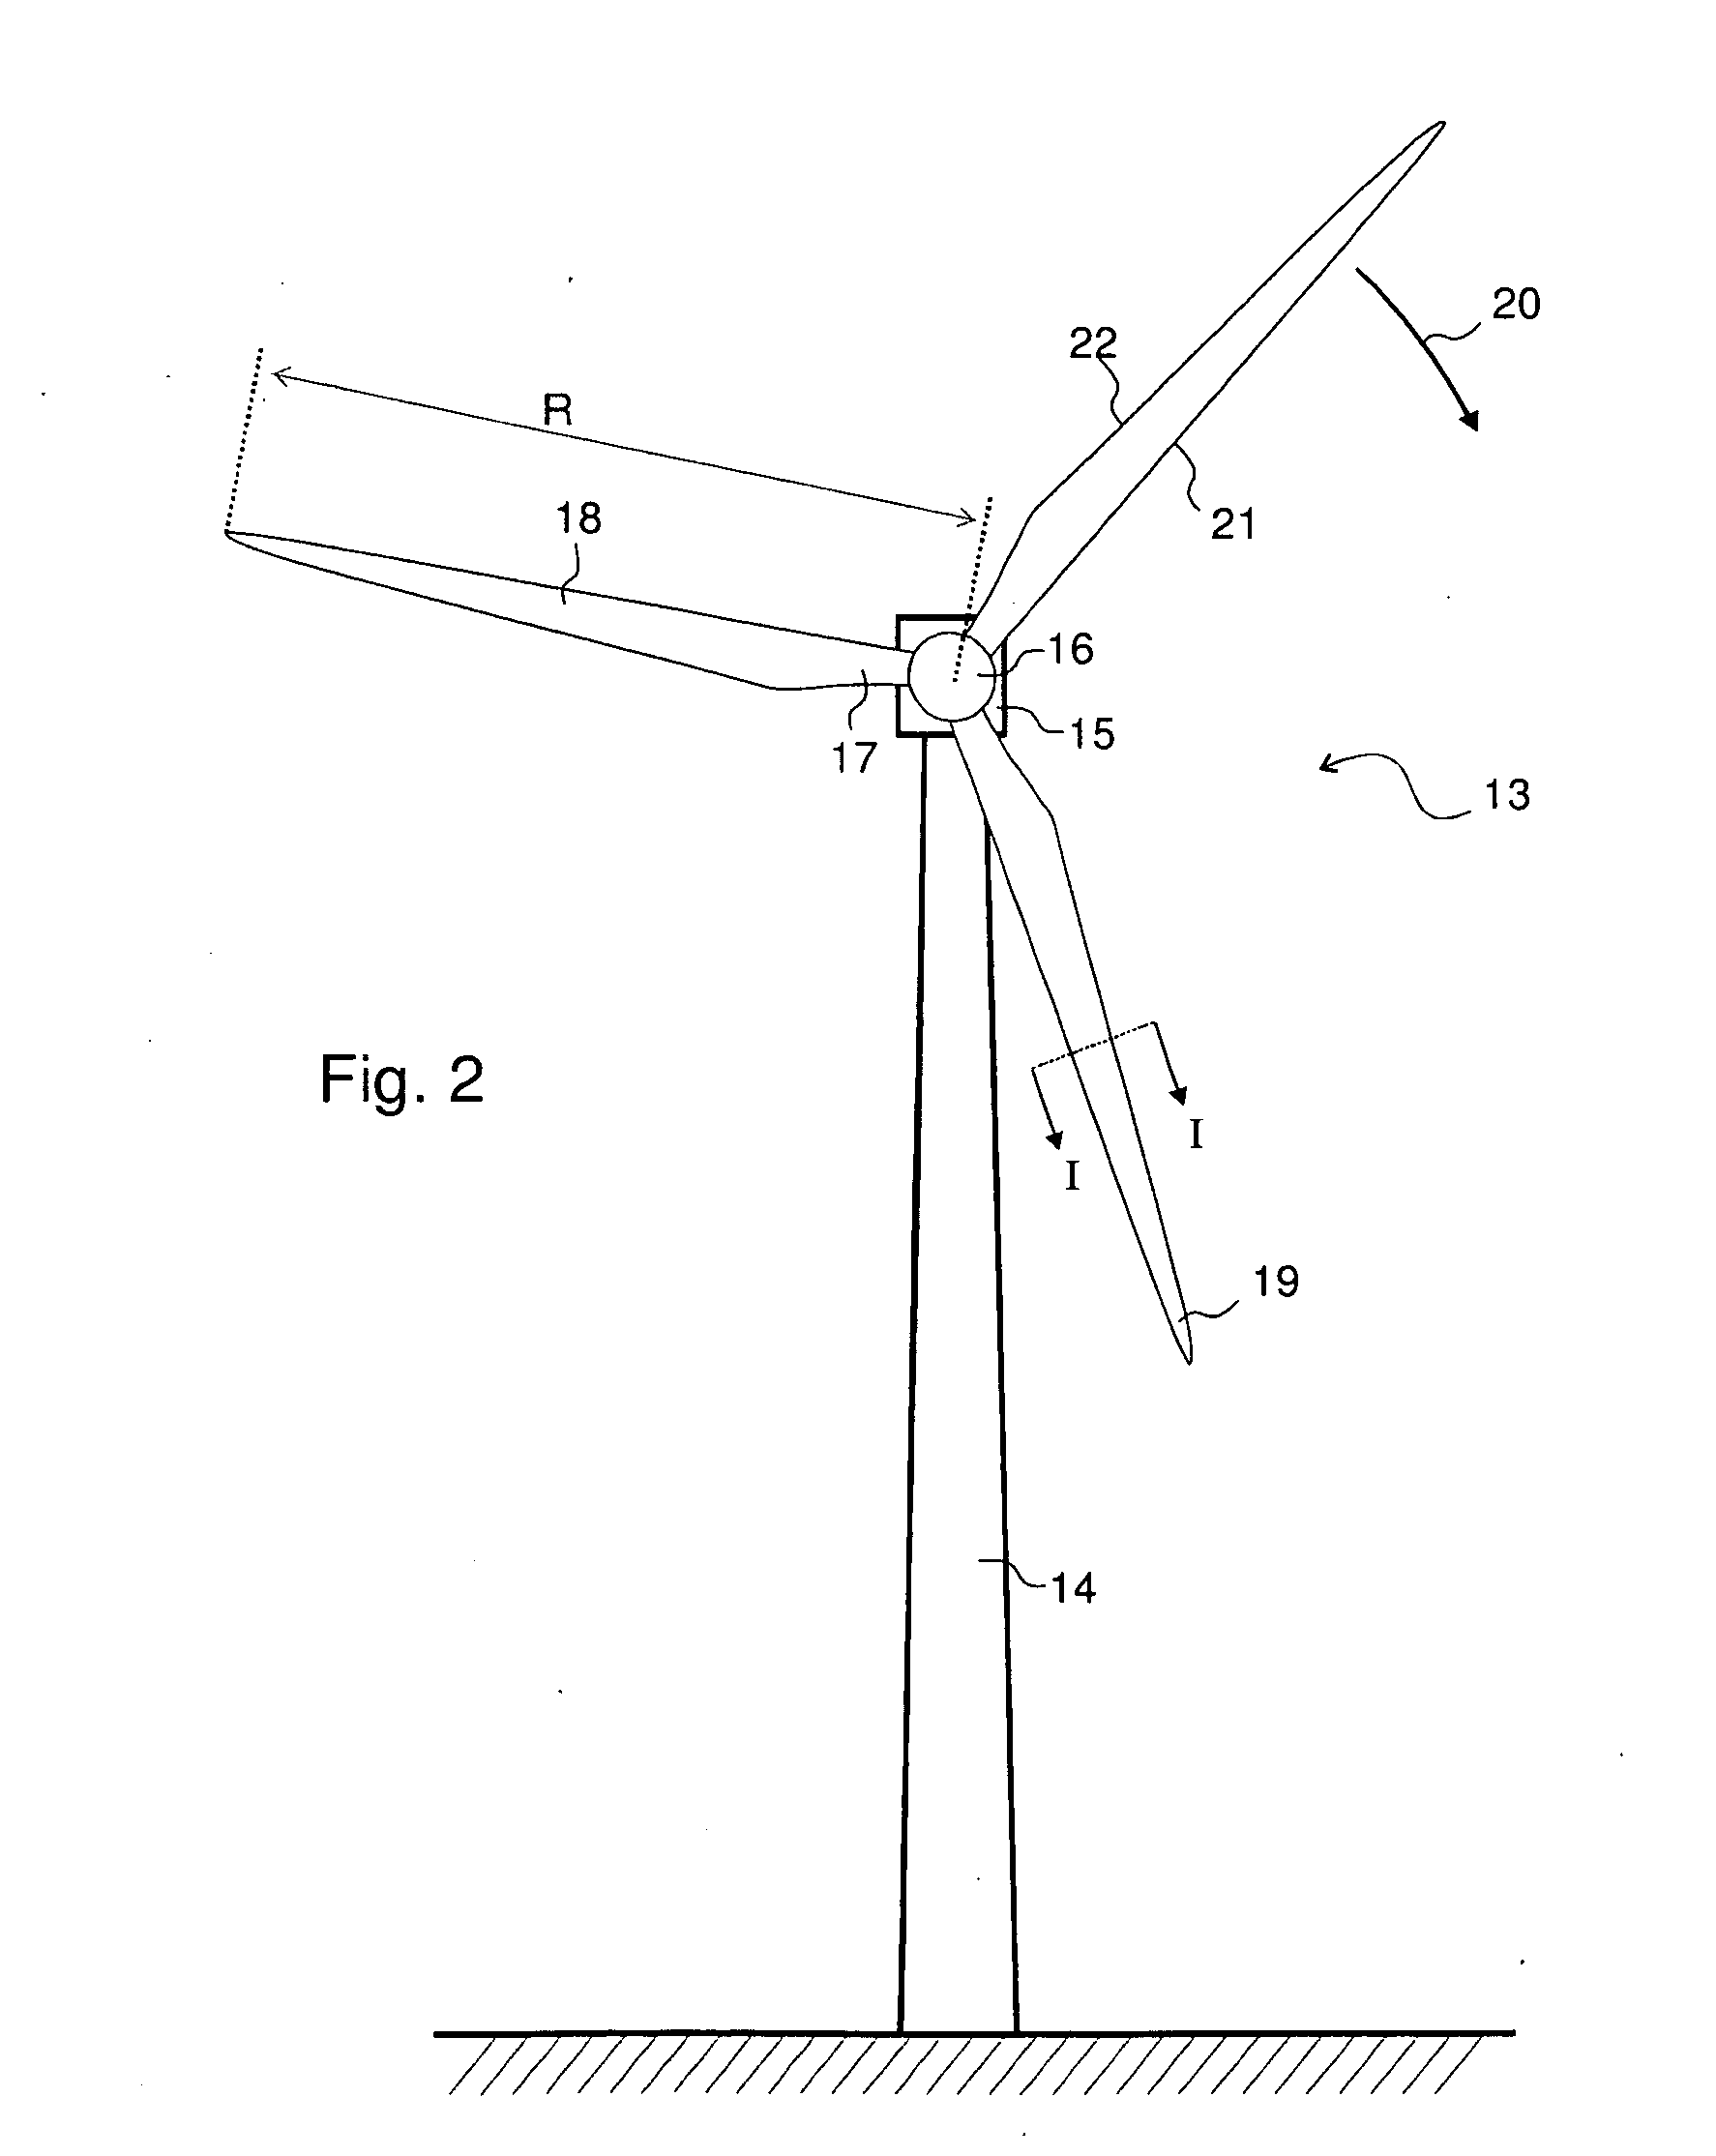 Windturbine with slender blade